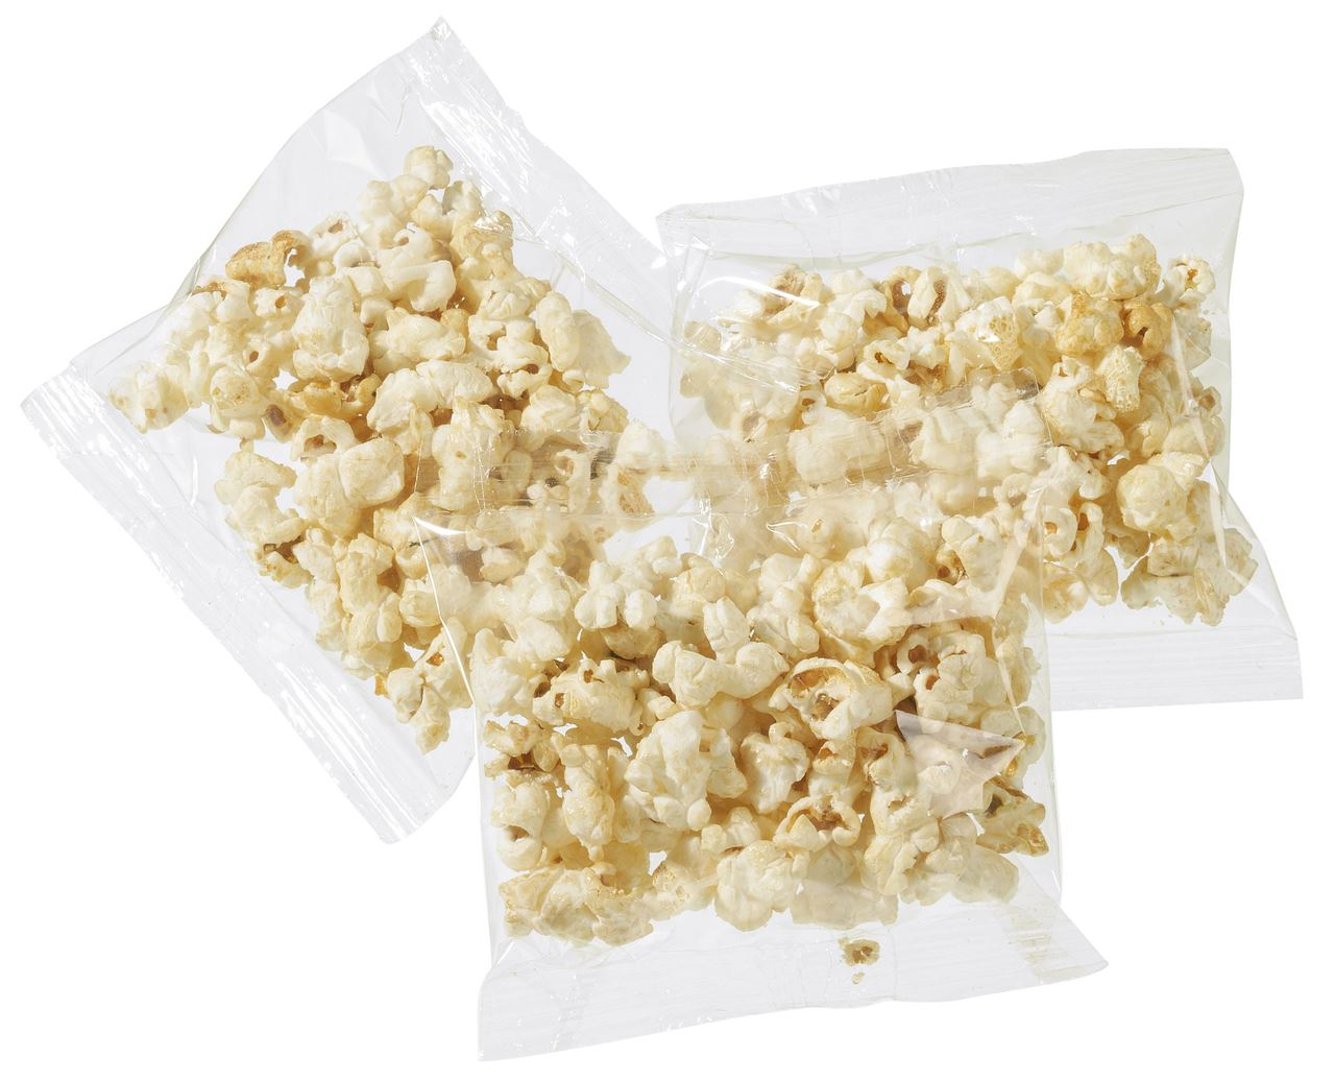 Bussy - Popcorn 100 x 8 g - 800 g Kiste